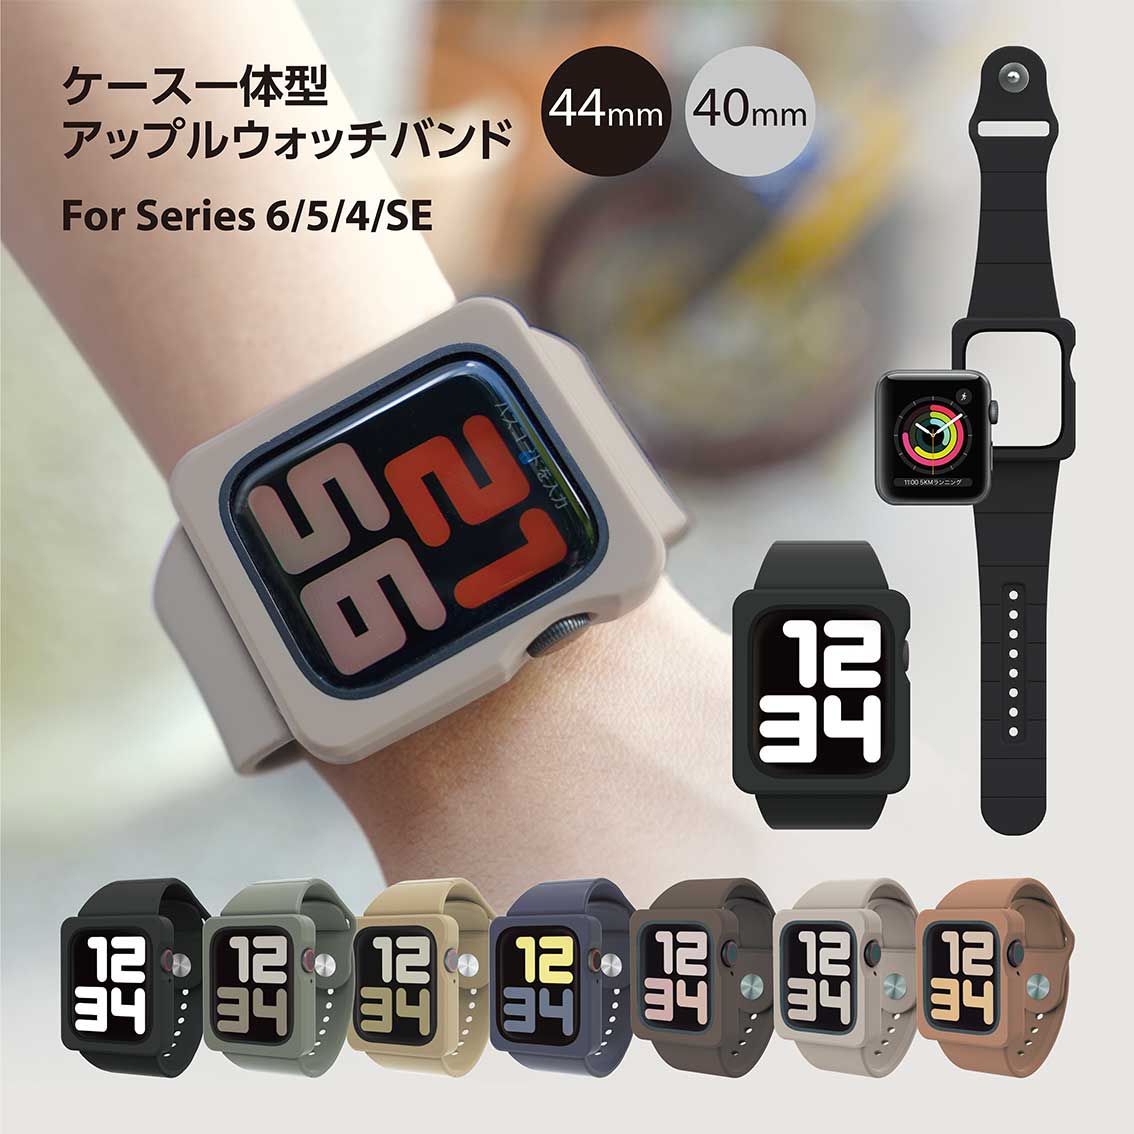 Apple Watch Series 44mm 繧｢繝�繝励Ν繧ｦ繧ｩ繝�繝� 繧ｫ繝舌�ｼ莉倥″